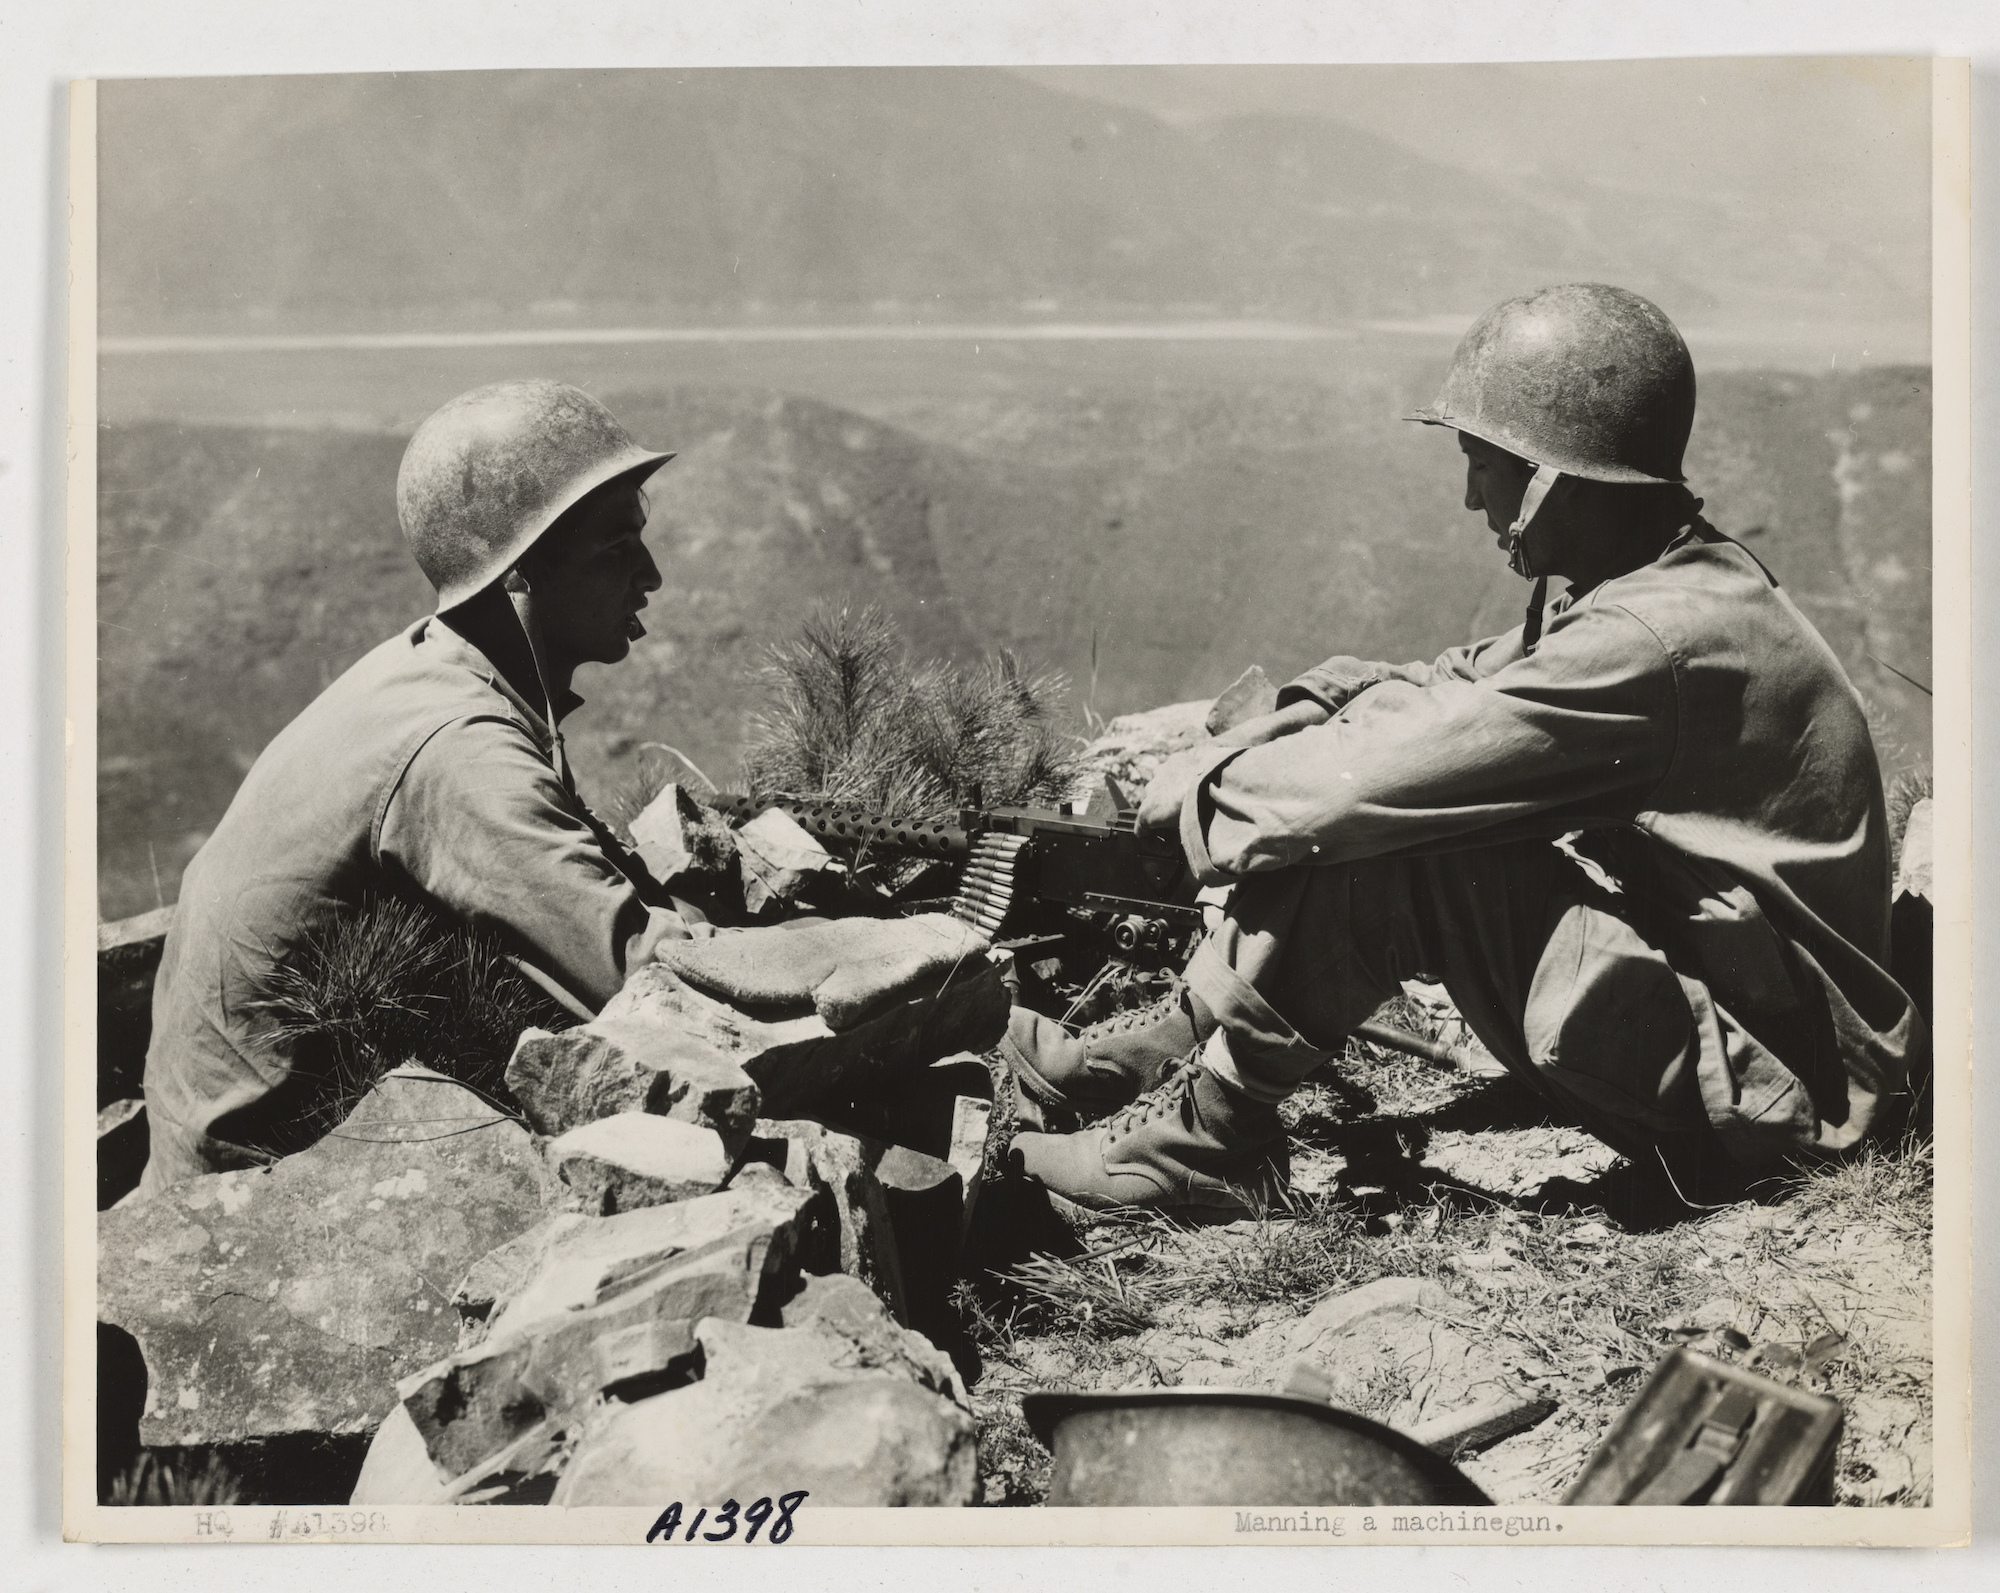 Korean War: Two marines manning a machine gun. 1950